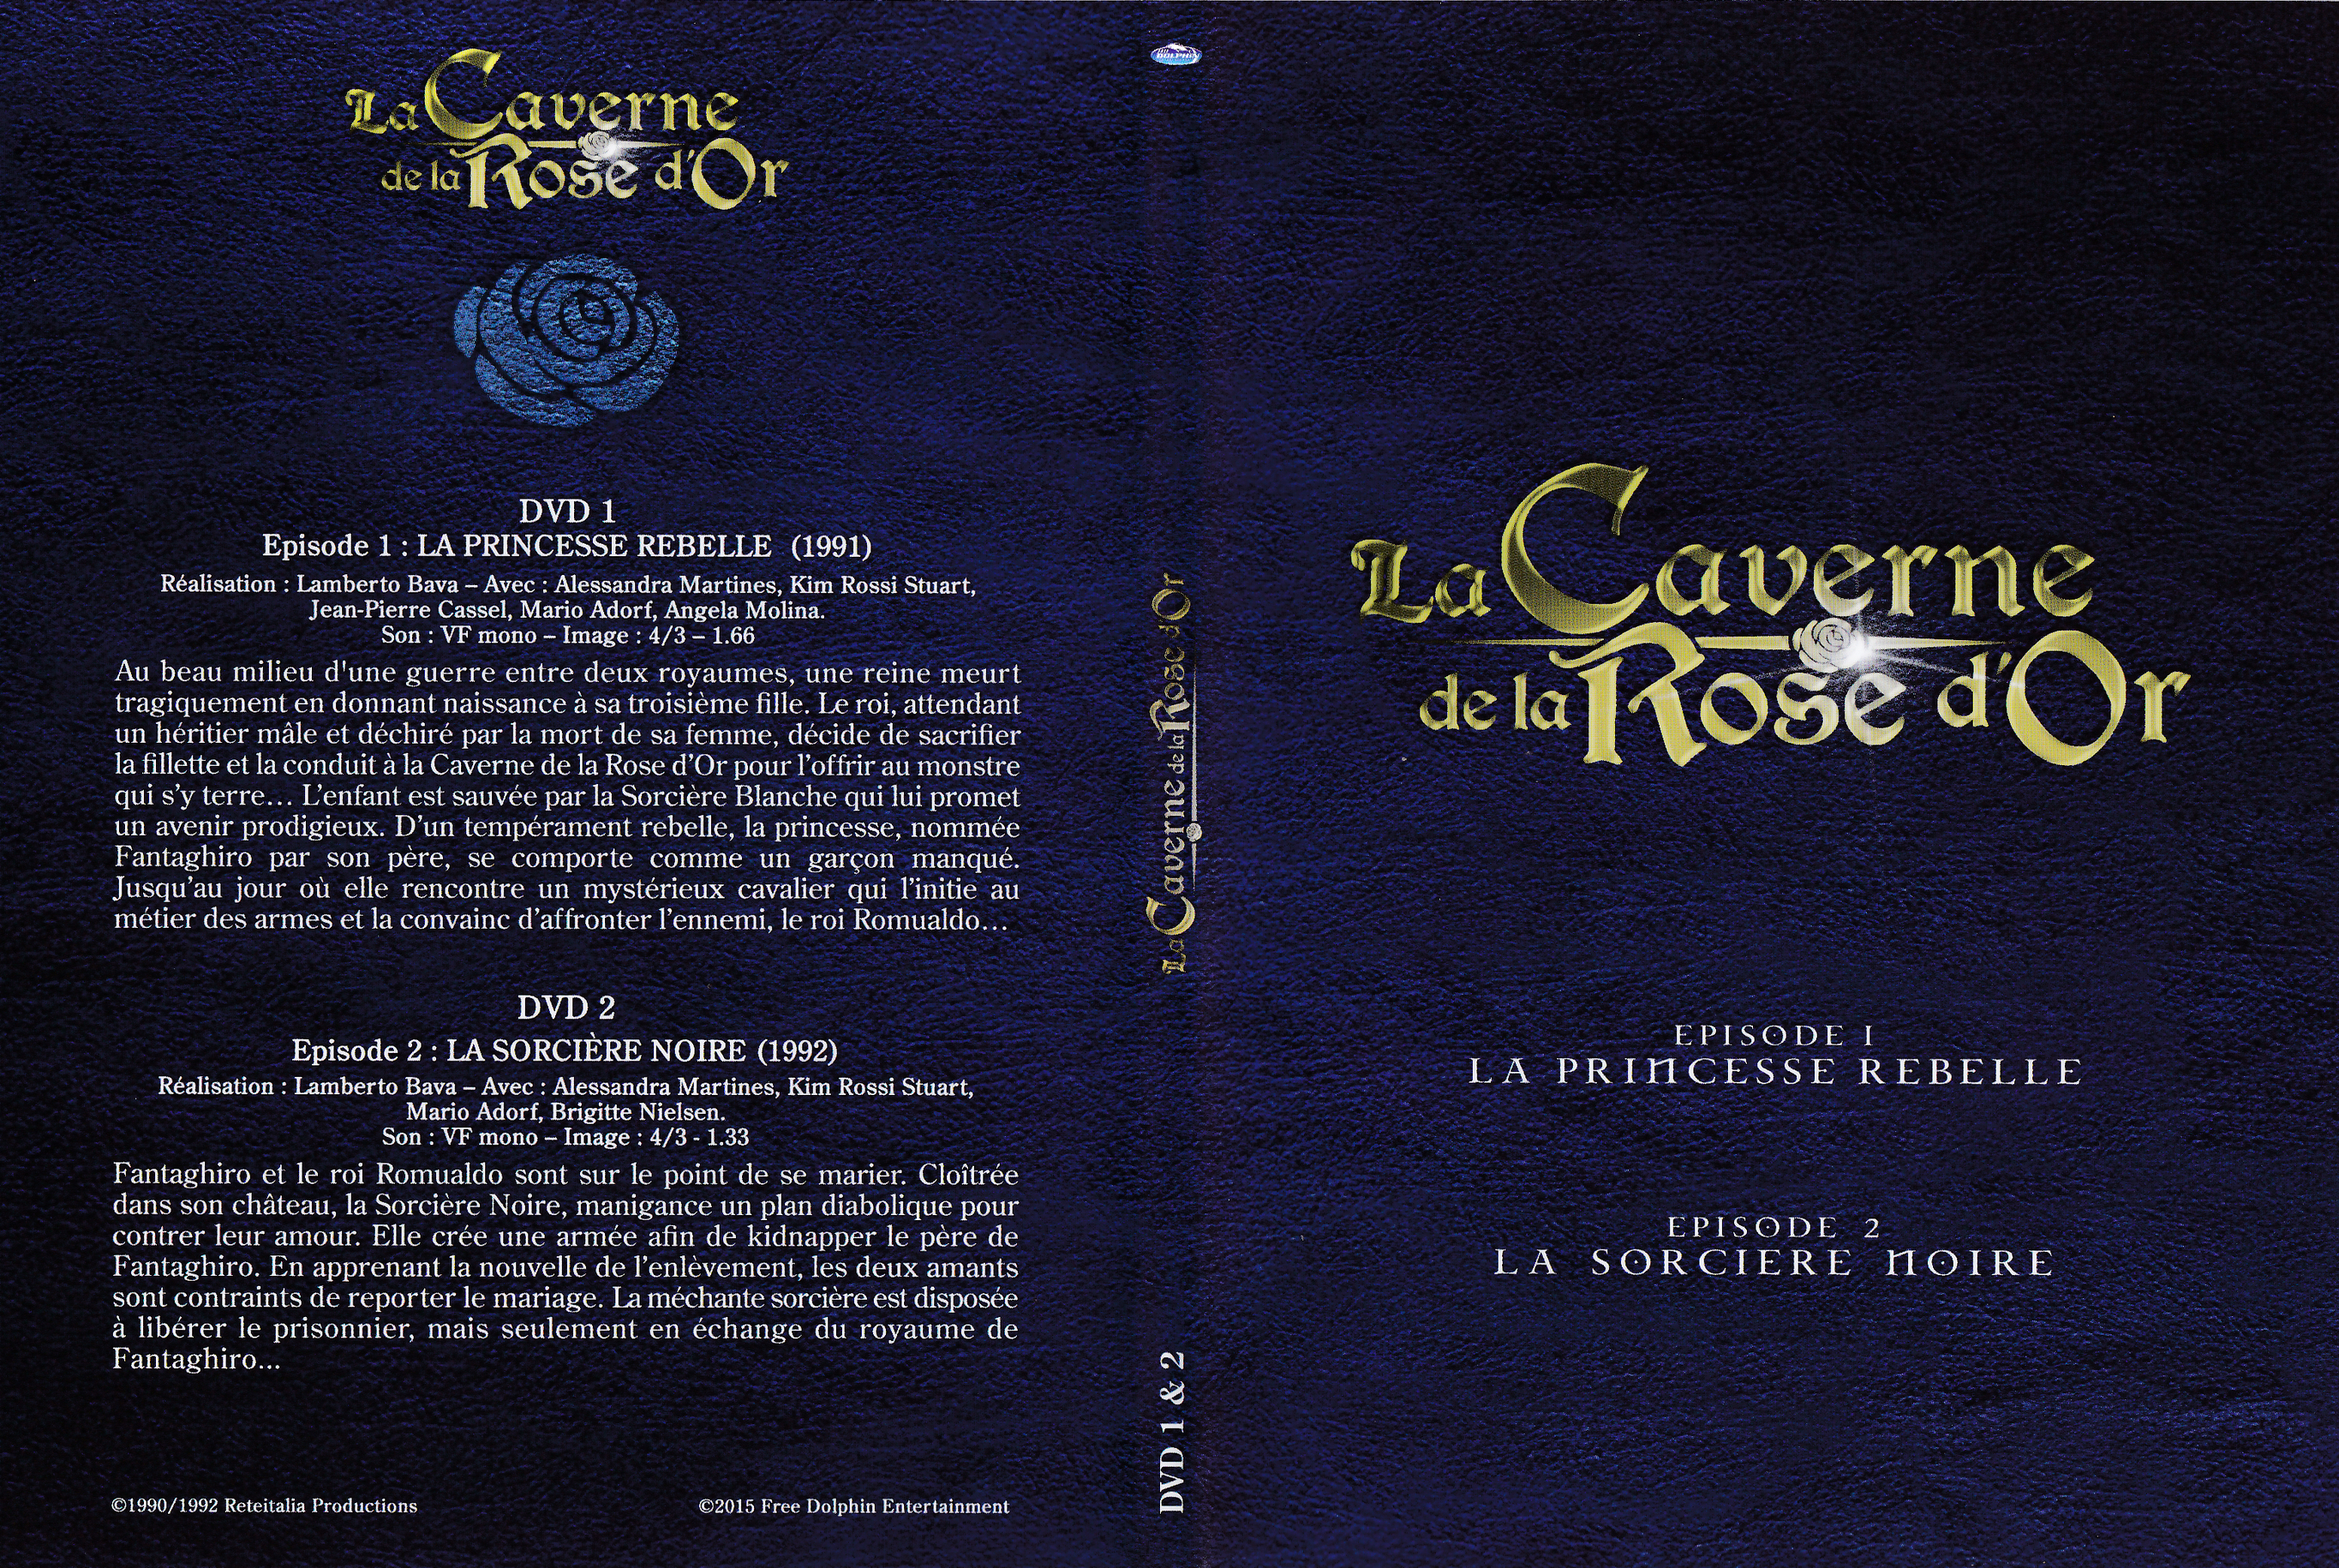 Jaquette DVD La Caverne de la Rose d